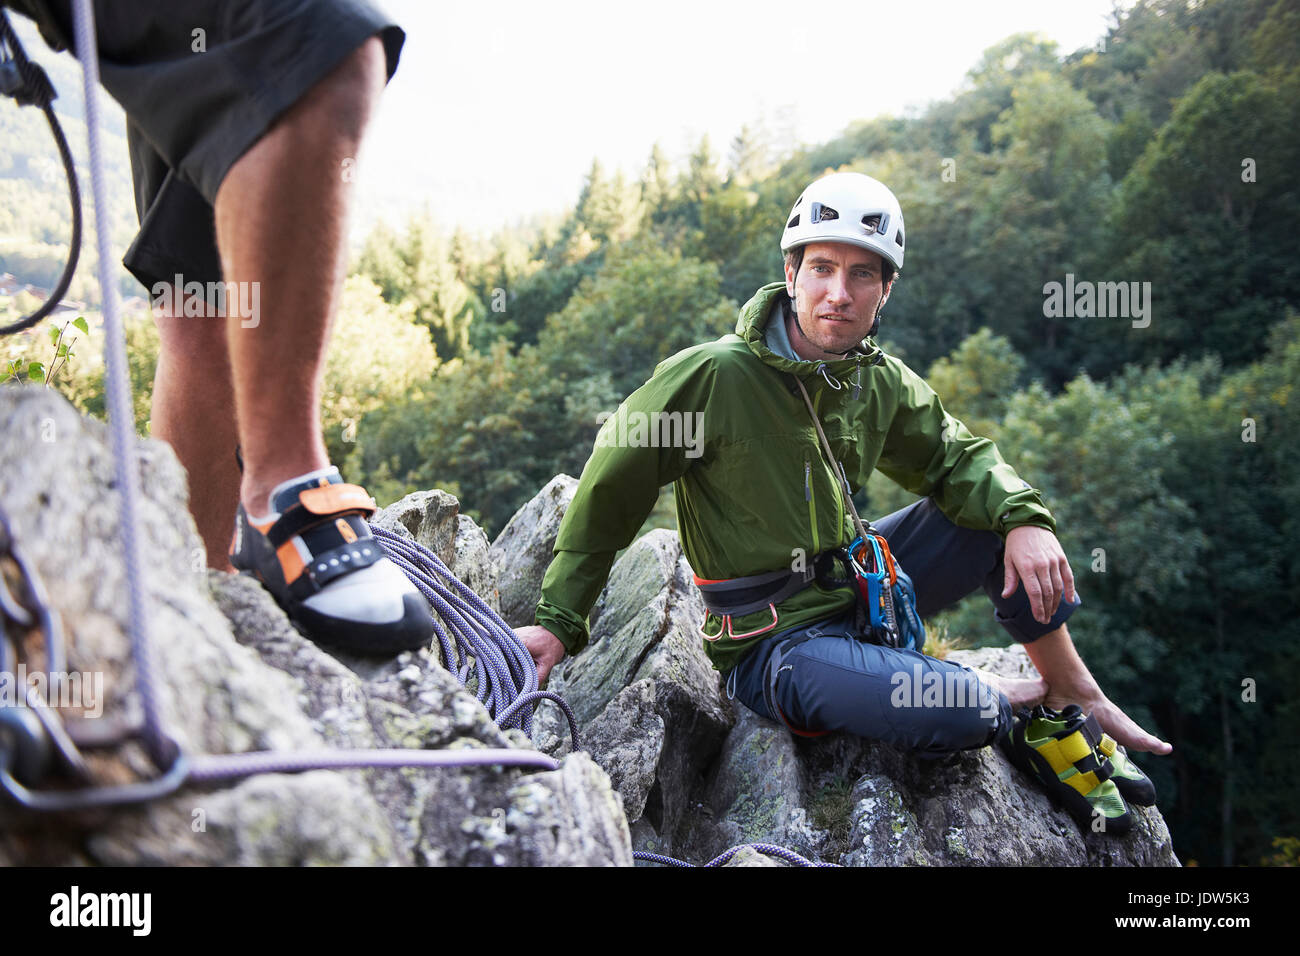 Rock climber assis sur des rochers, Chamonix, Haute Savoie, France Banque D'Images